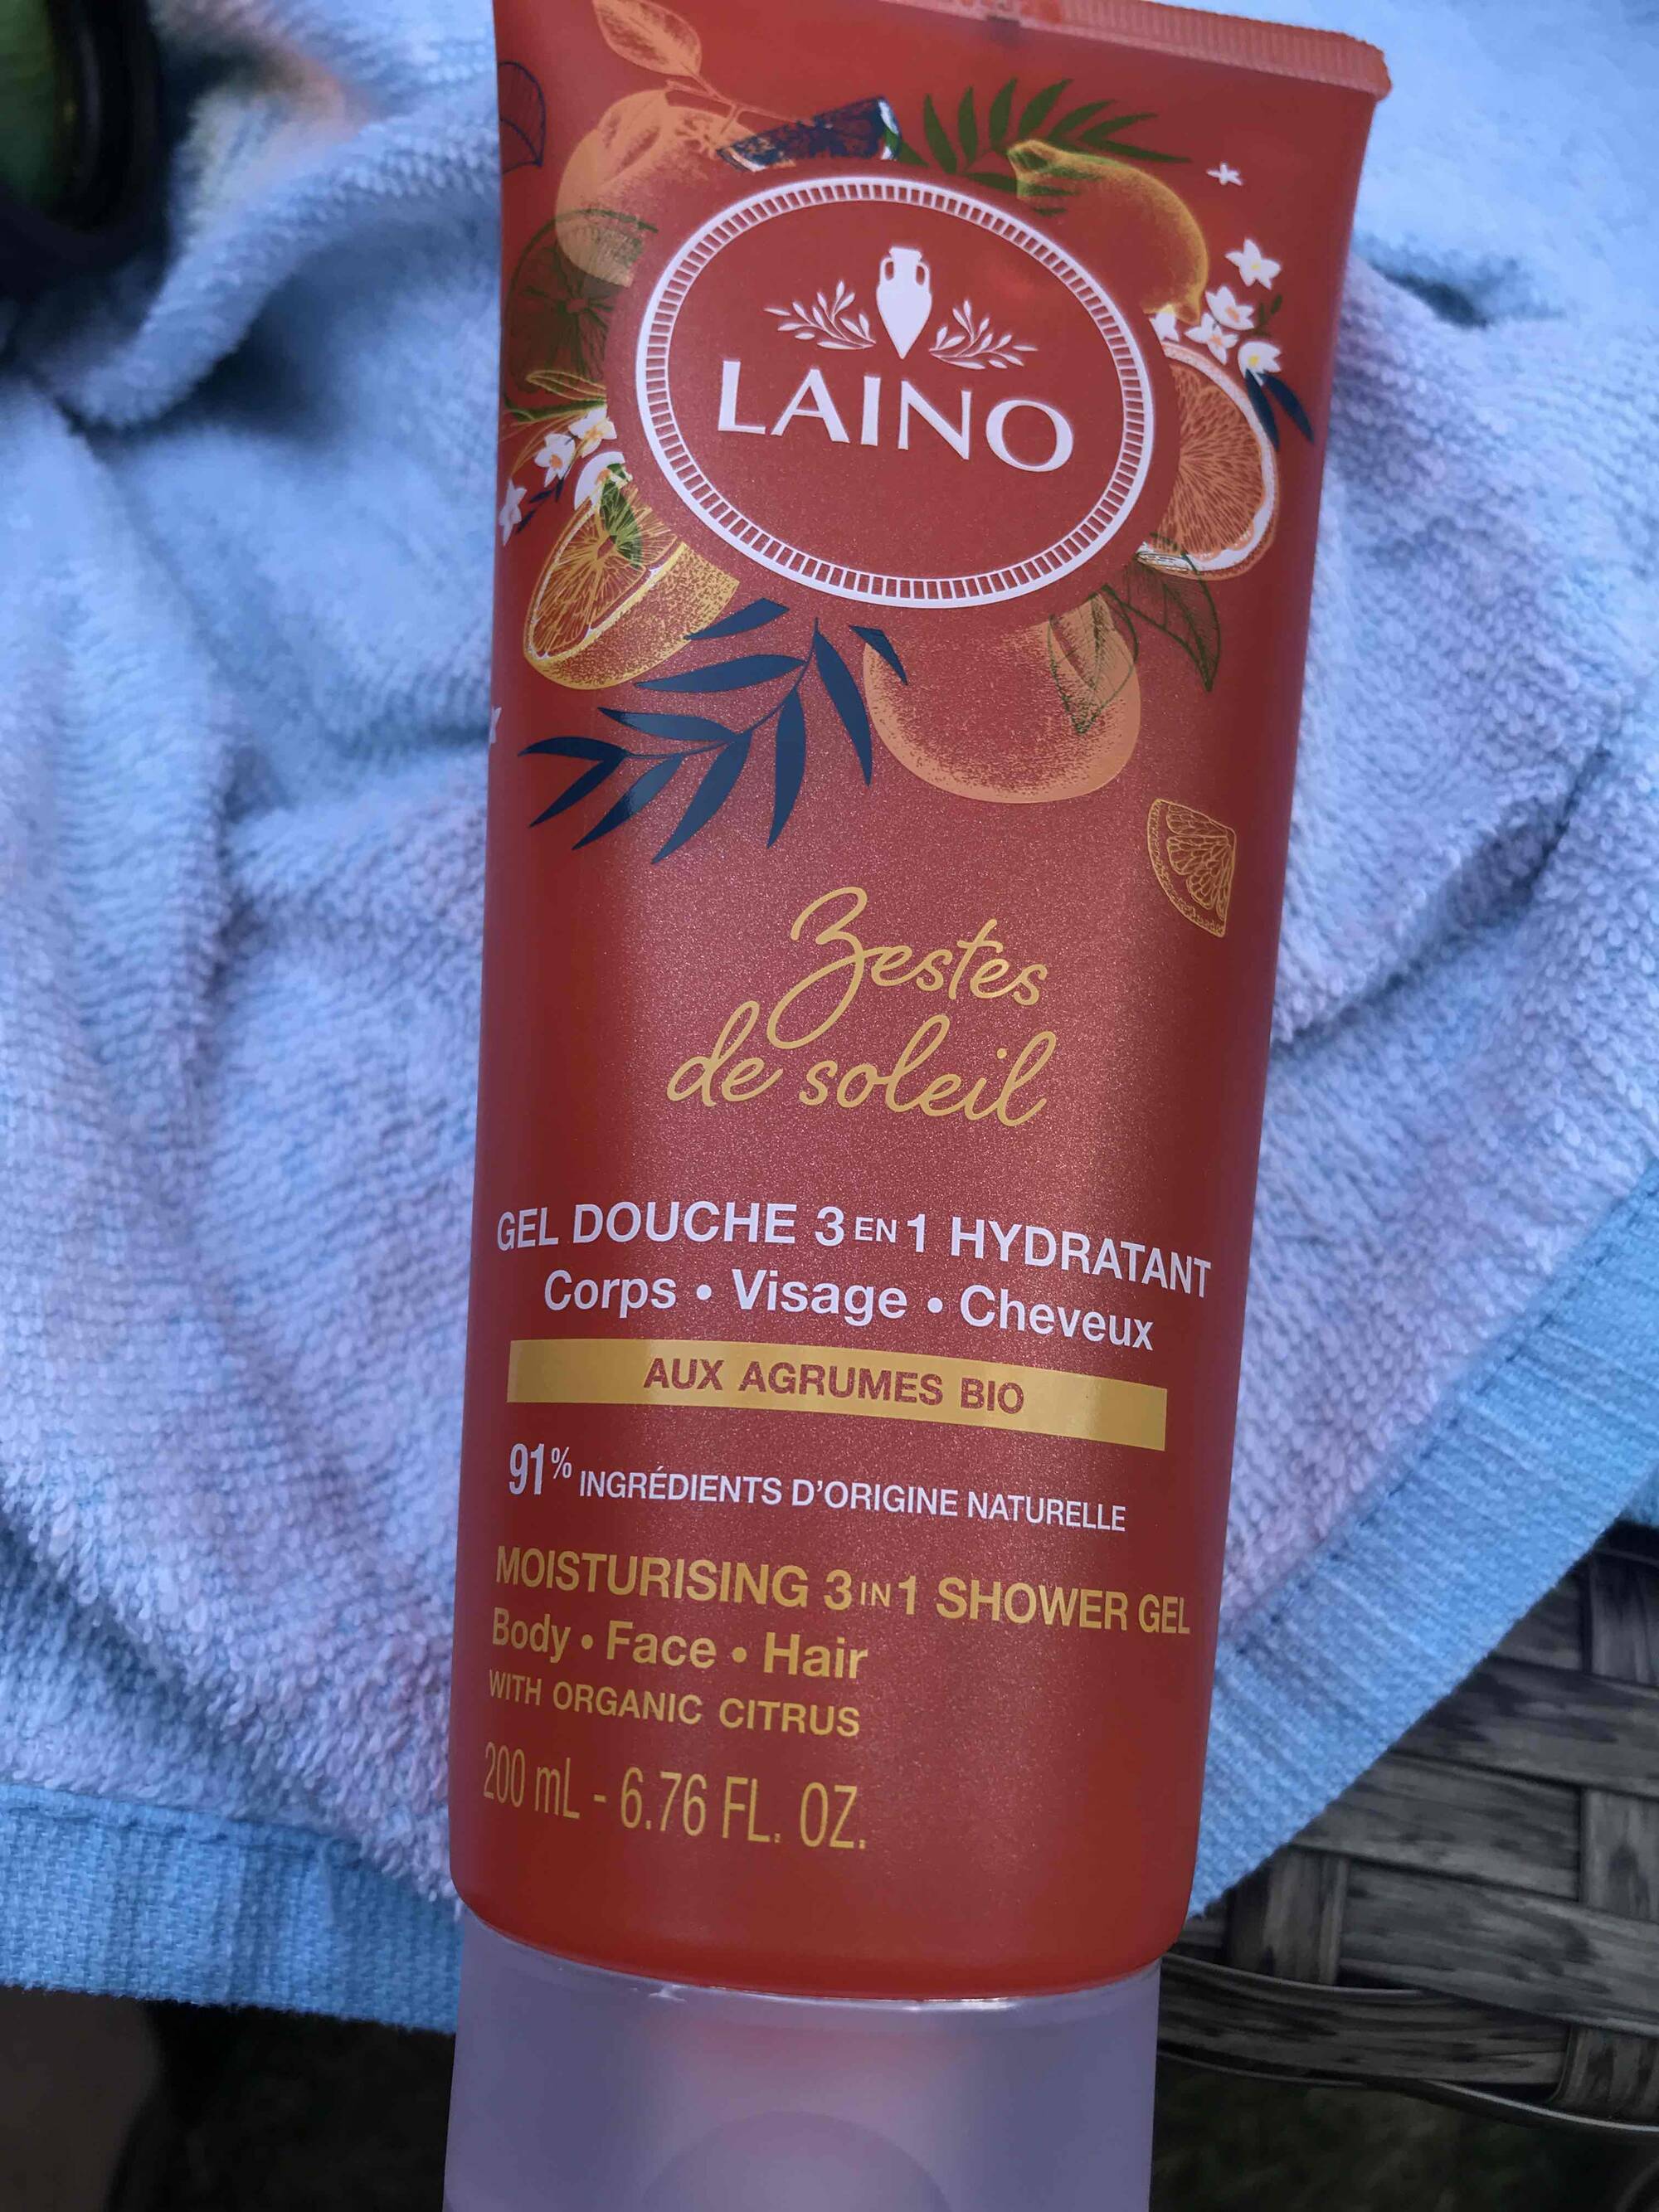 LAINO - Zeste de soleil - Gel douche 3 en 1 hydratant 